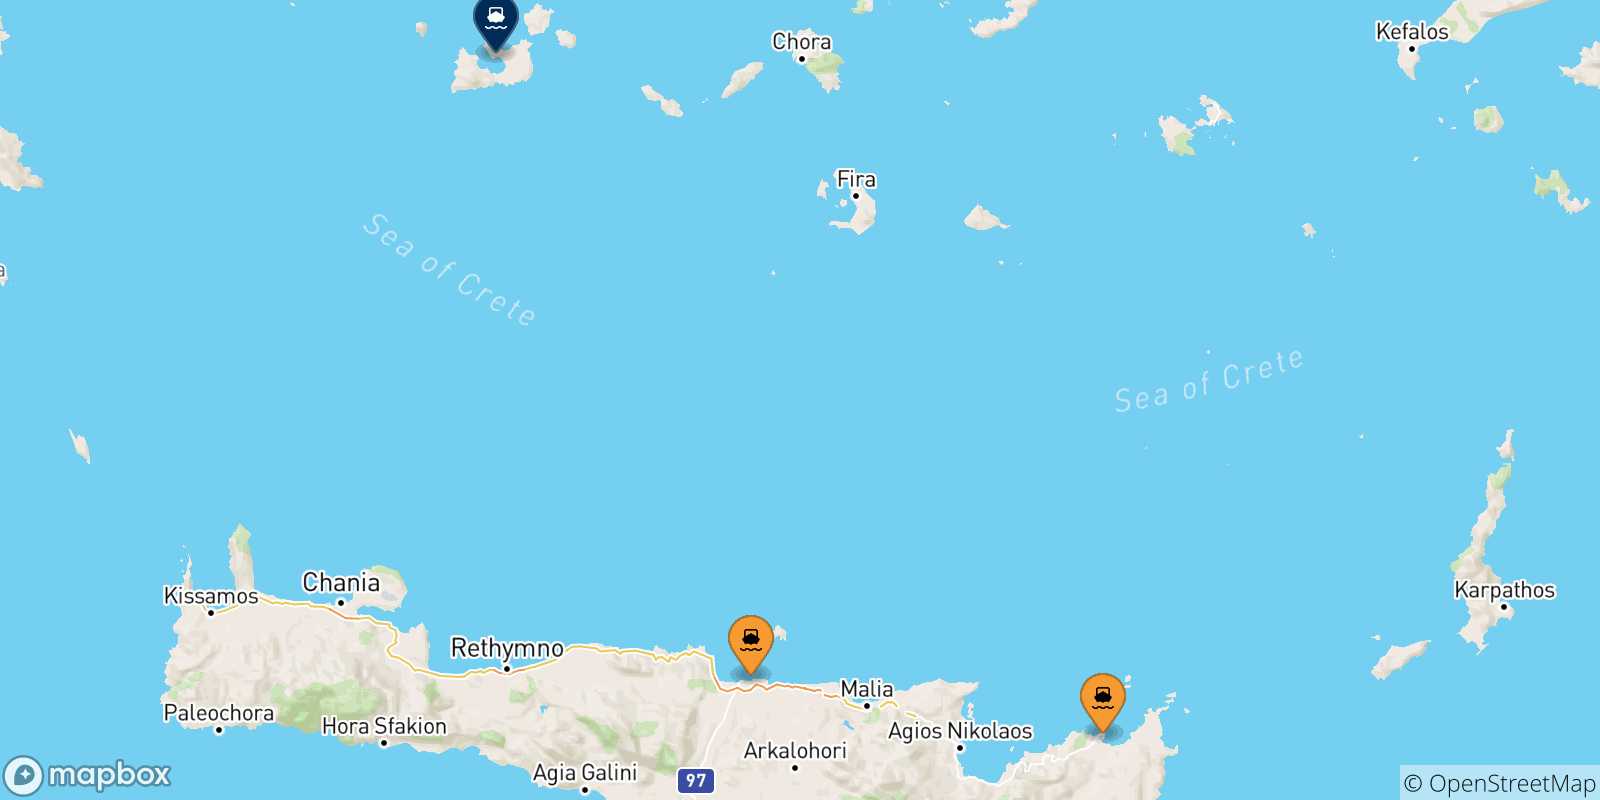 Mappa delle possibili rotte tra Creta e Milos